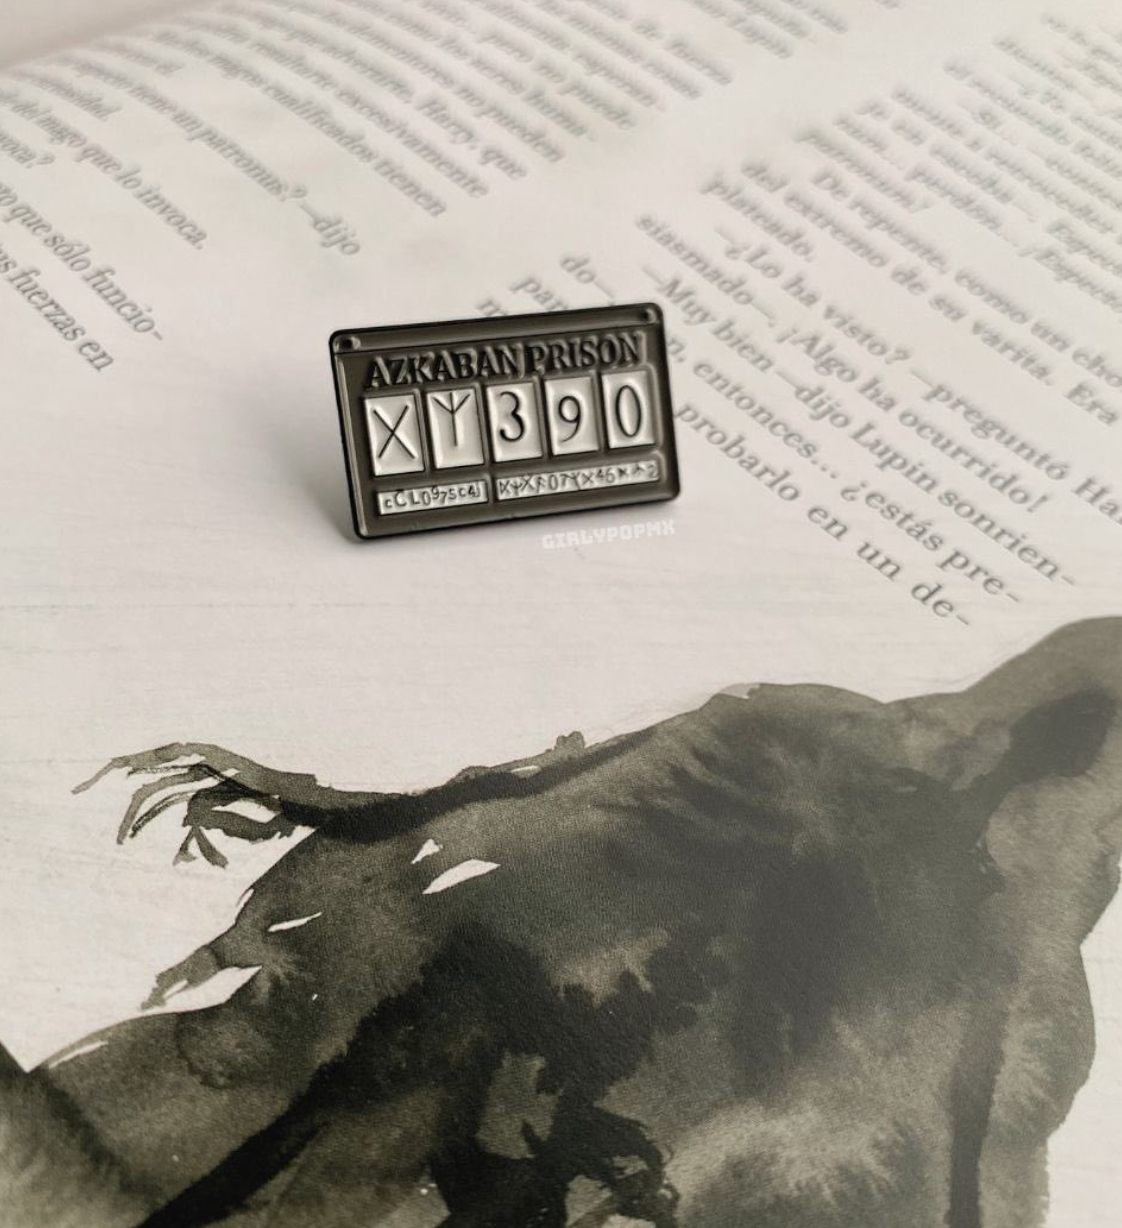 Pin placa prisionero de Azkaban